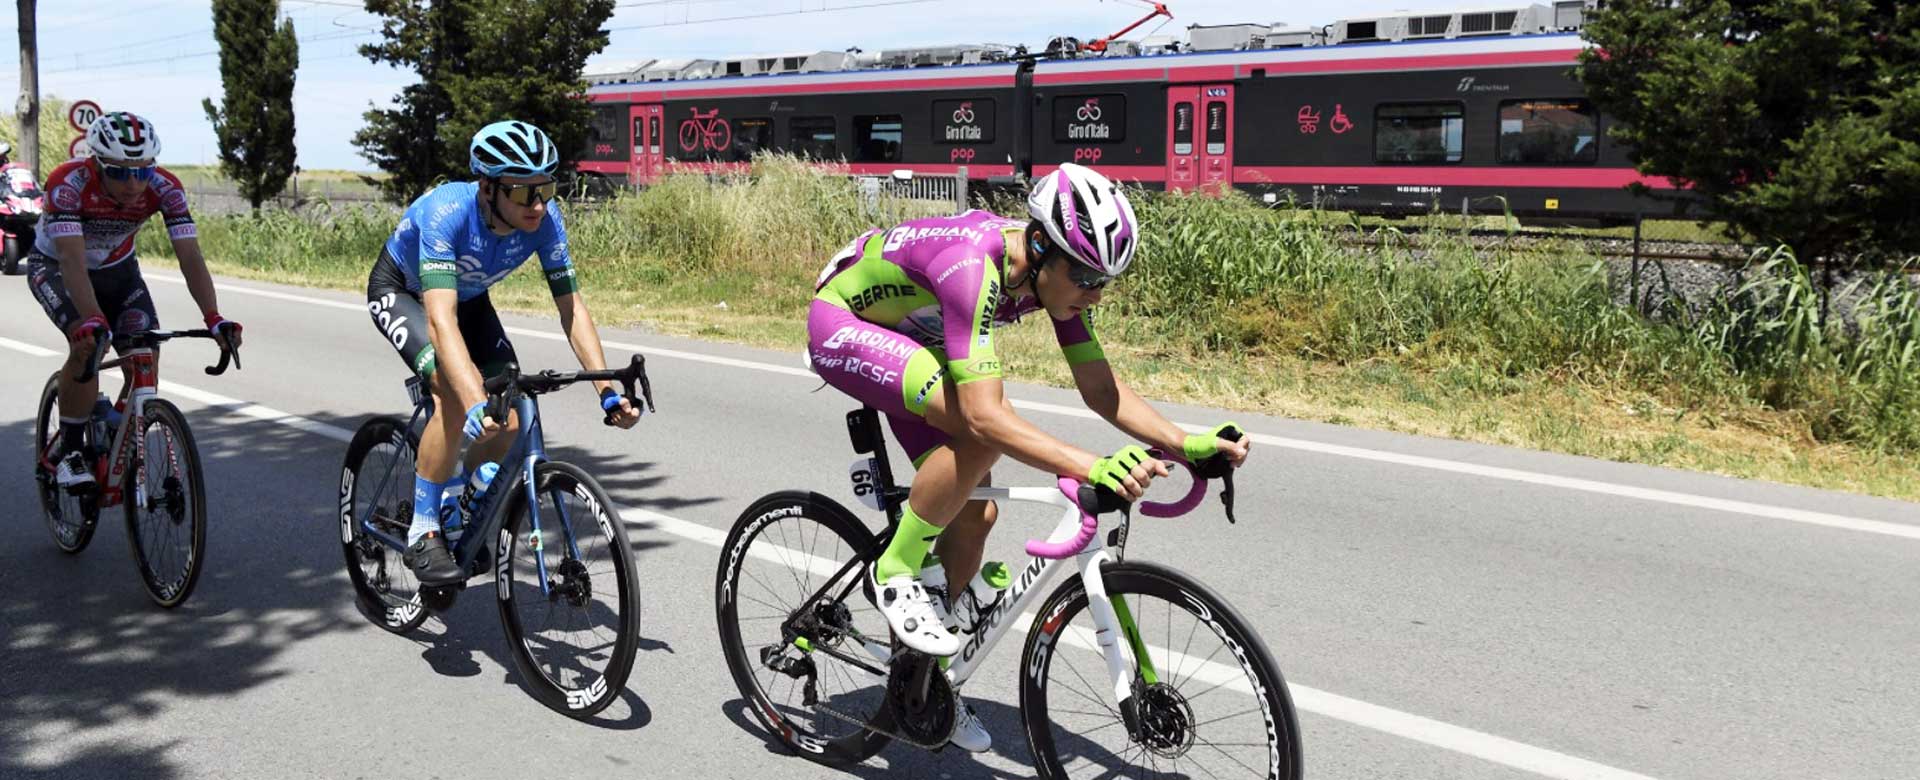 Il treno Pop affianca i ciclisti del Giro d'Italia in occasione della settima tappa 